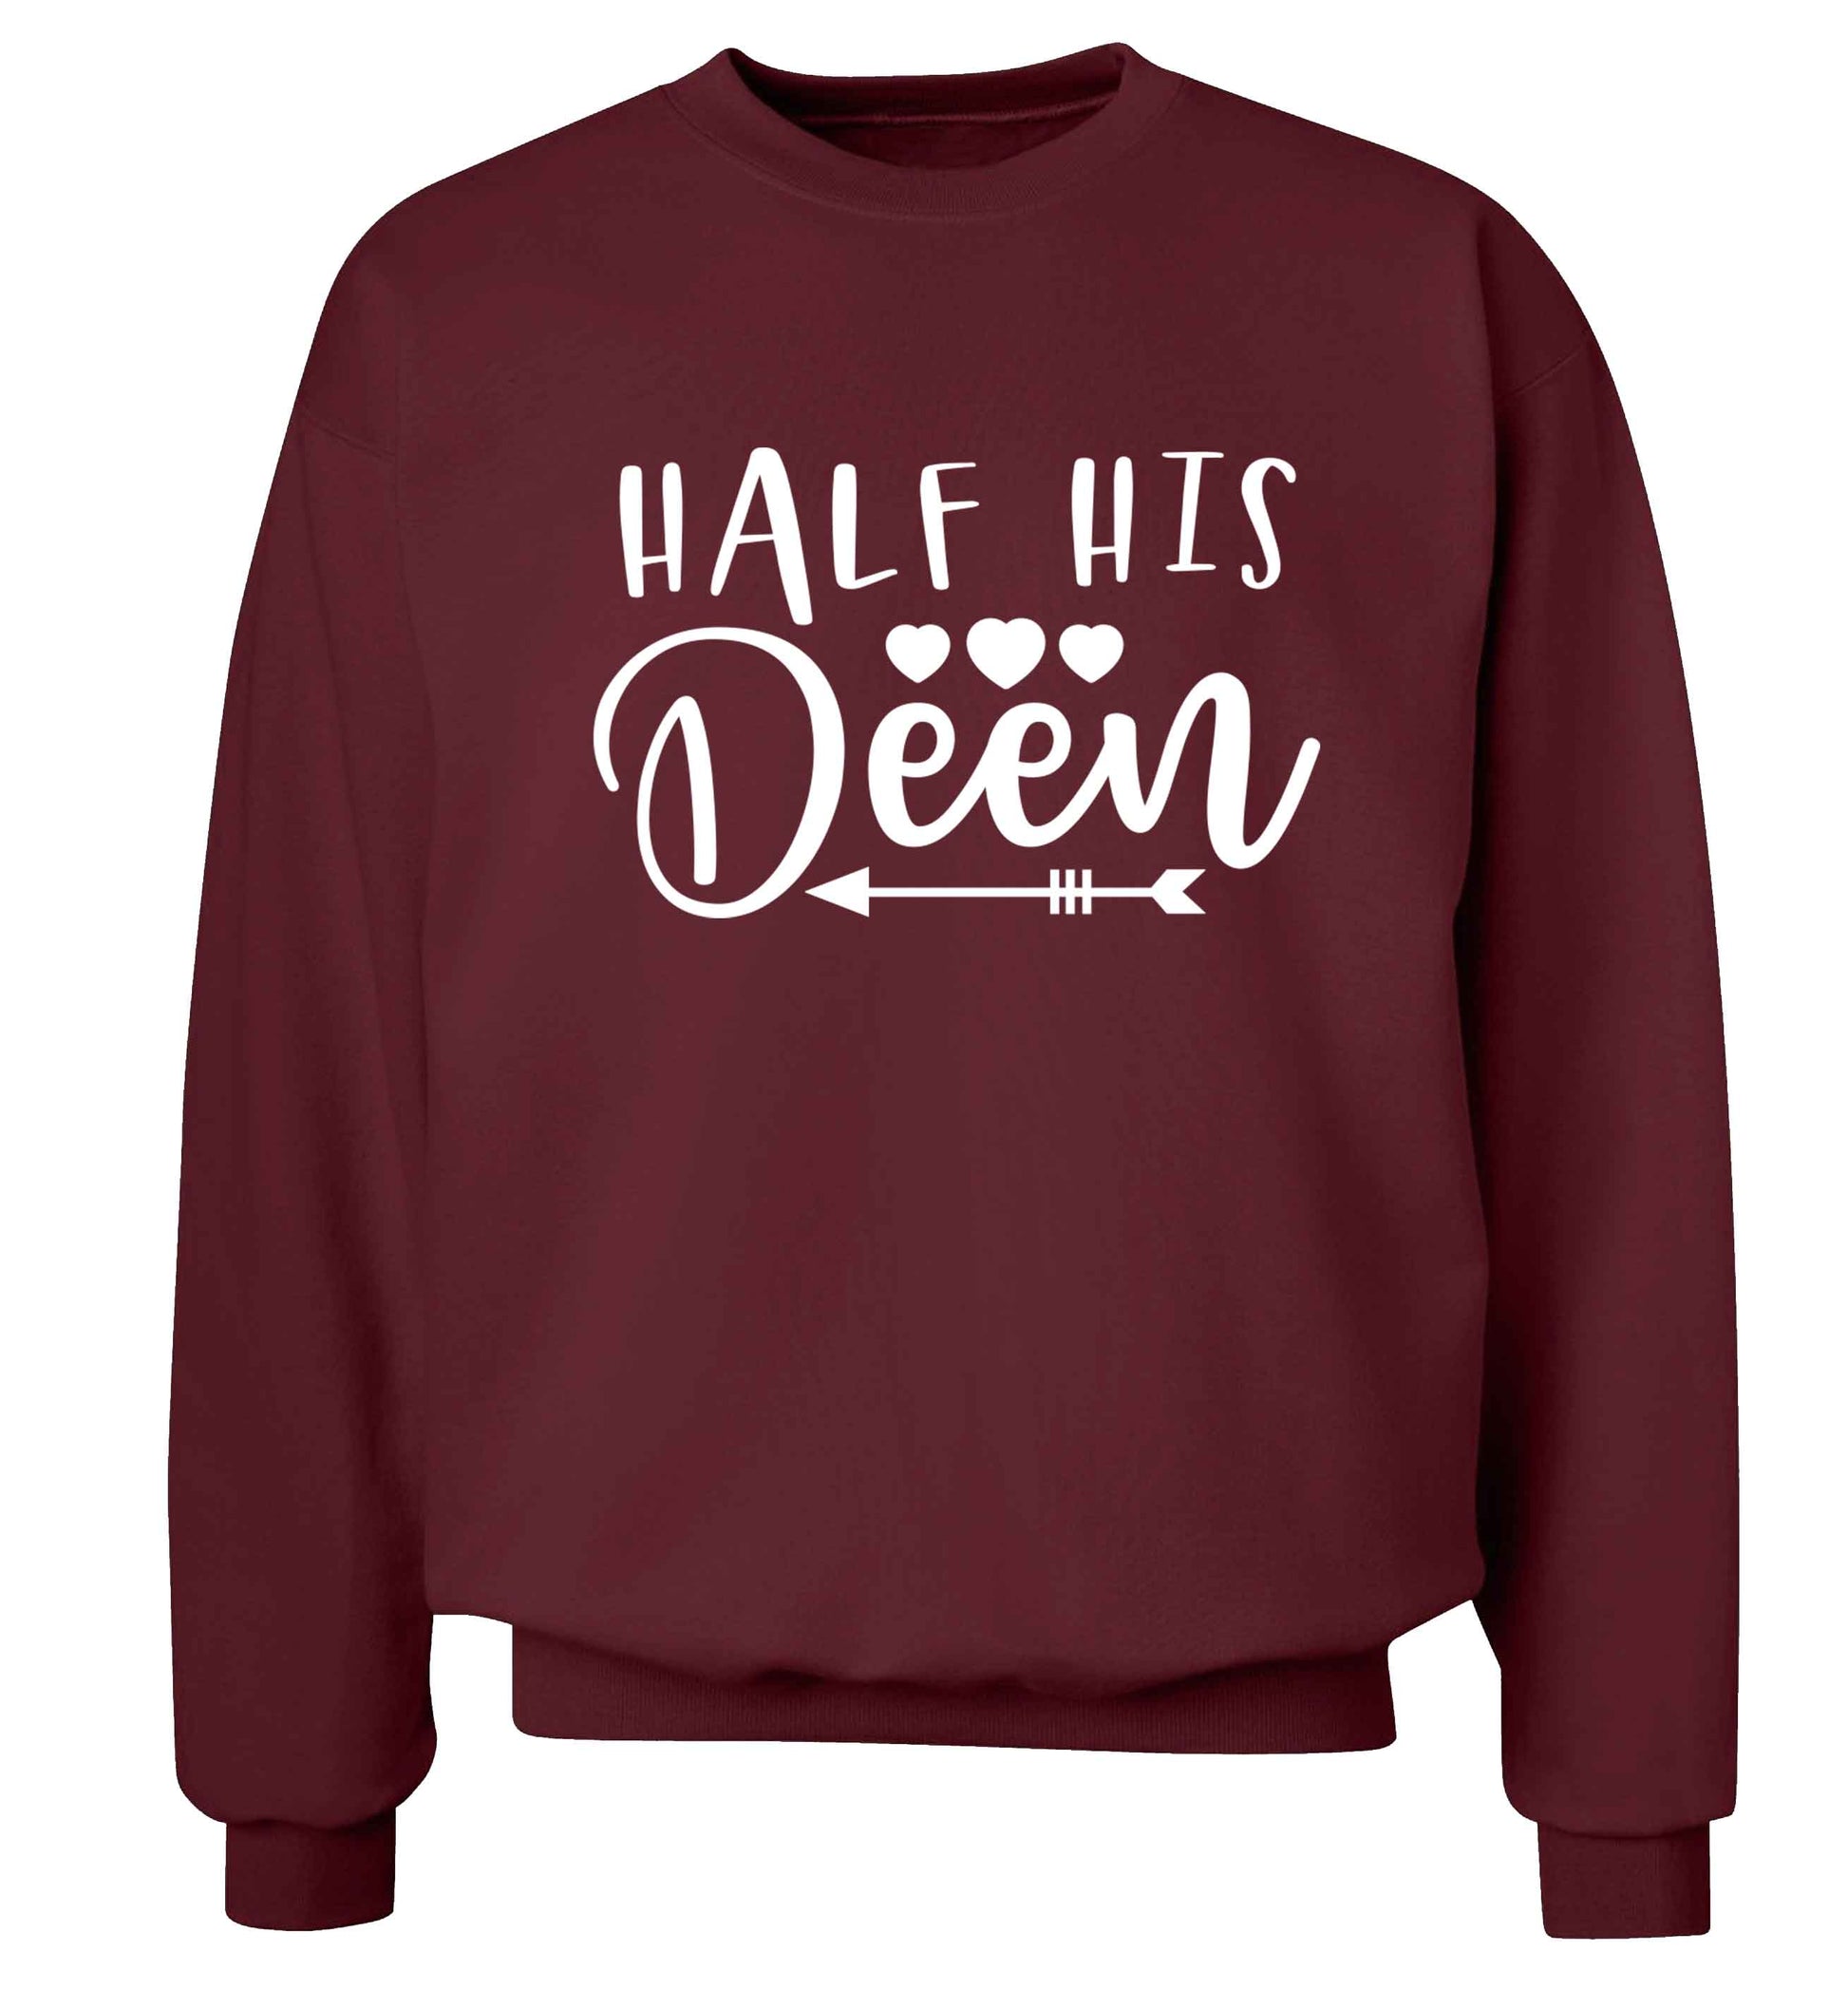 Half his deen Adult's unisex maroon Sweater 2XL